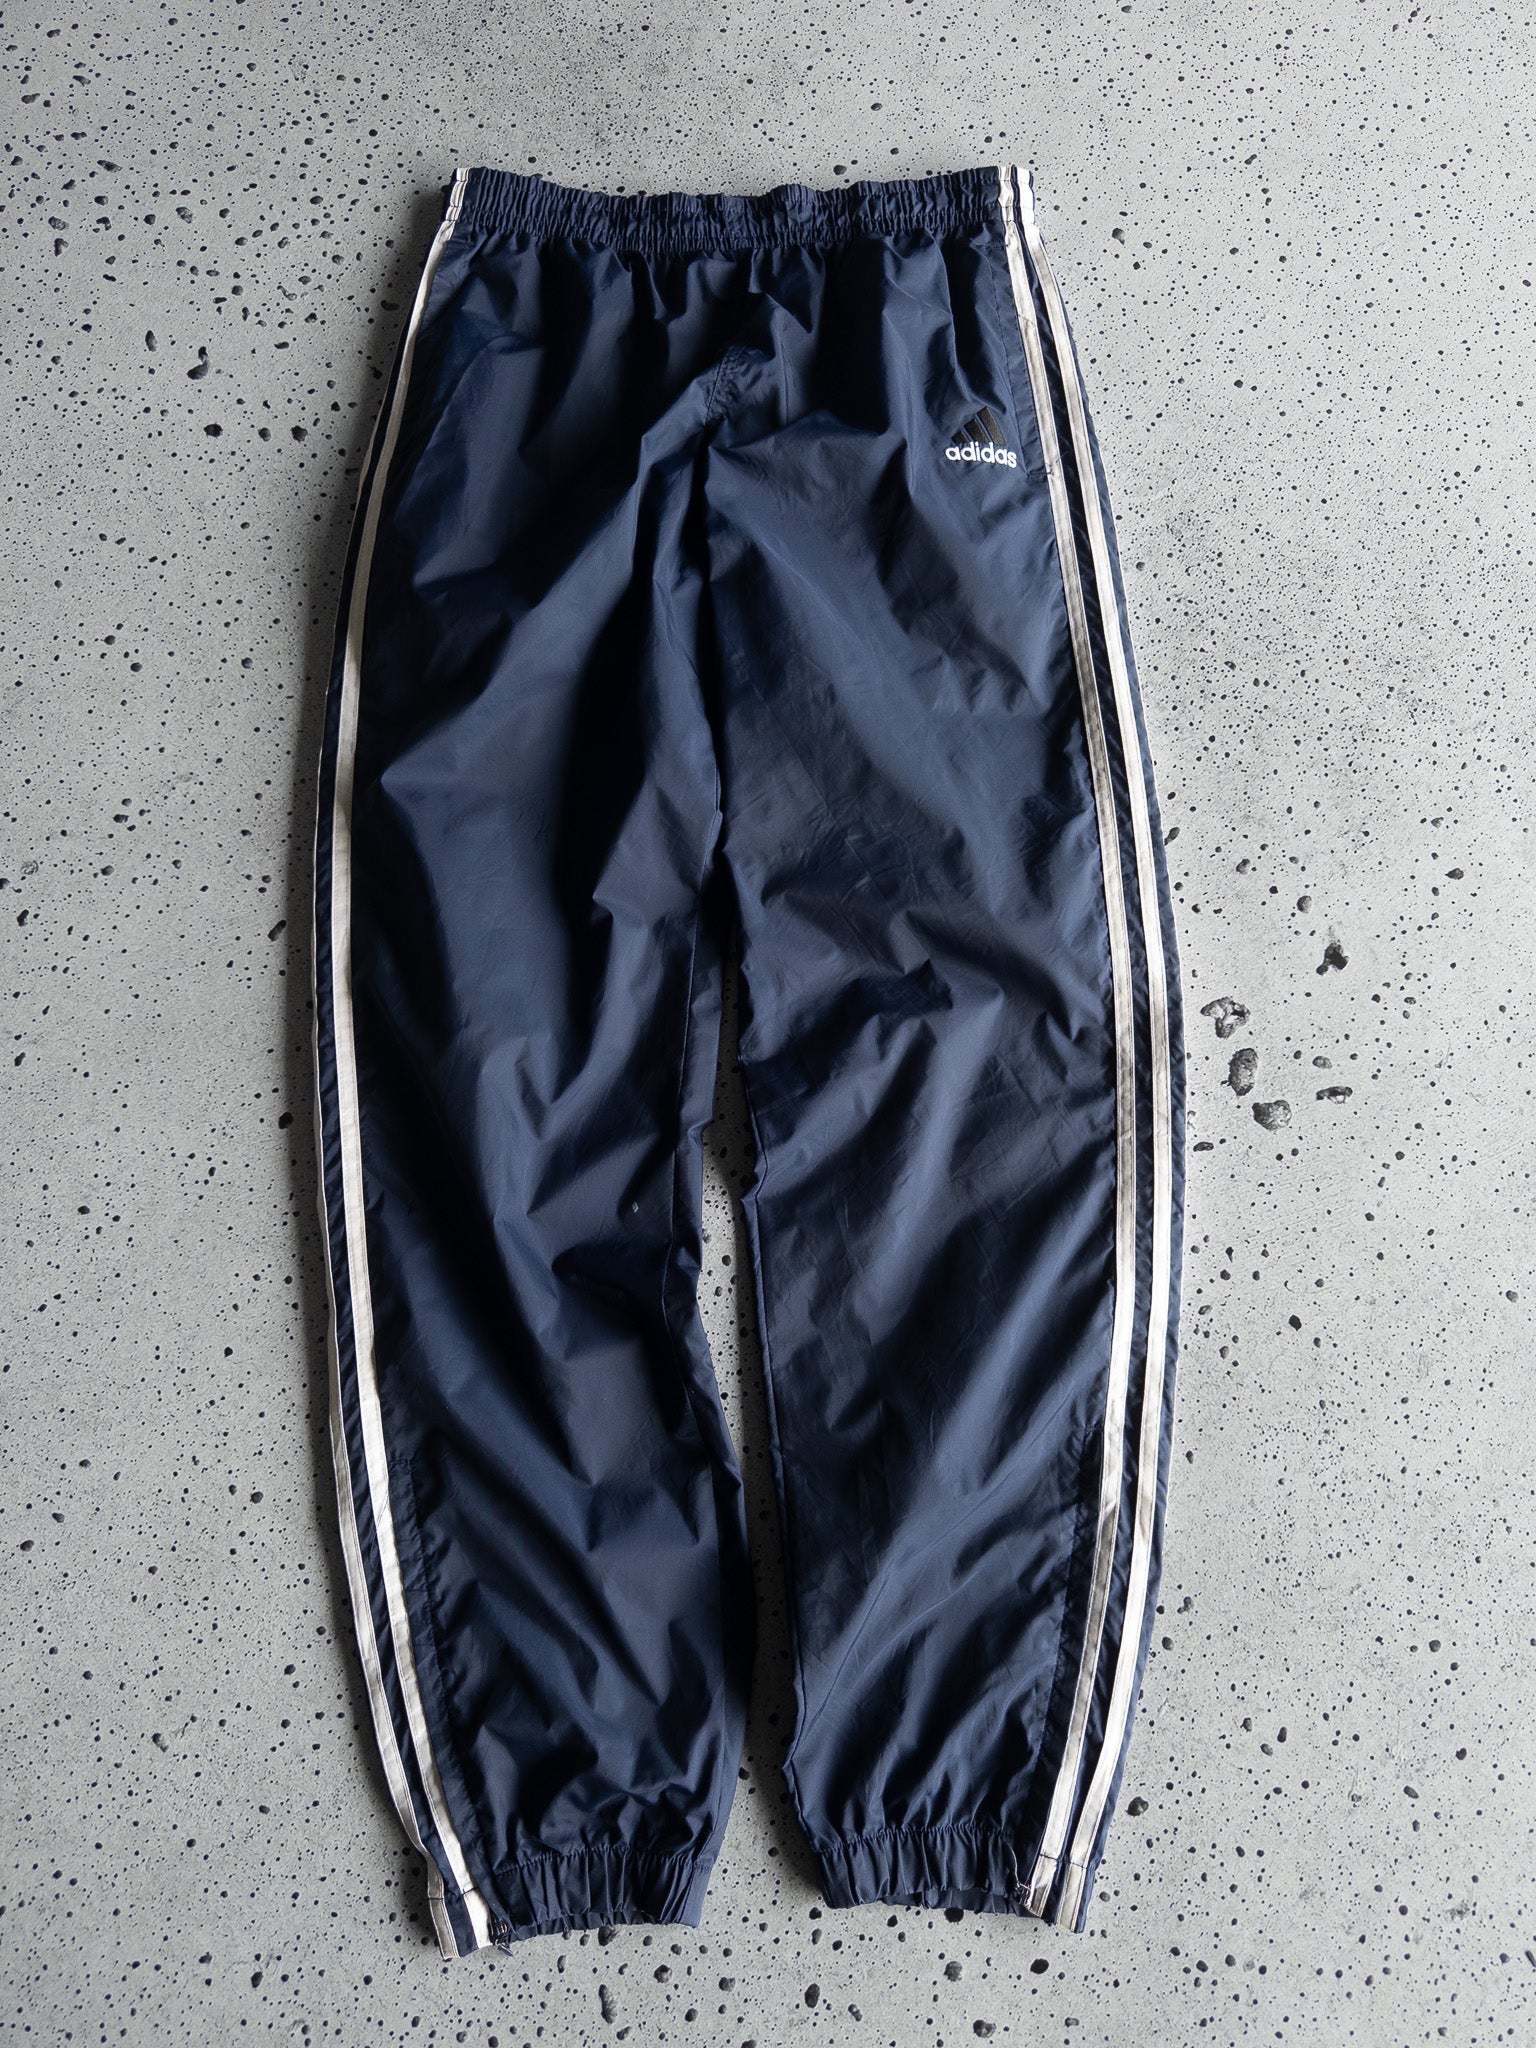 Vintage Adidas Track Pants (L)